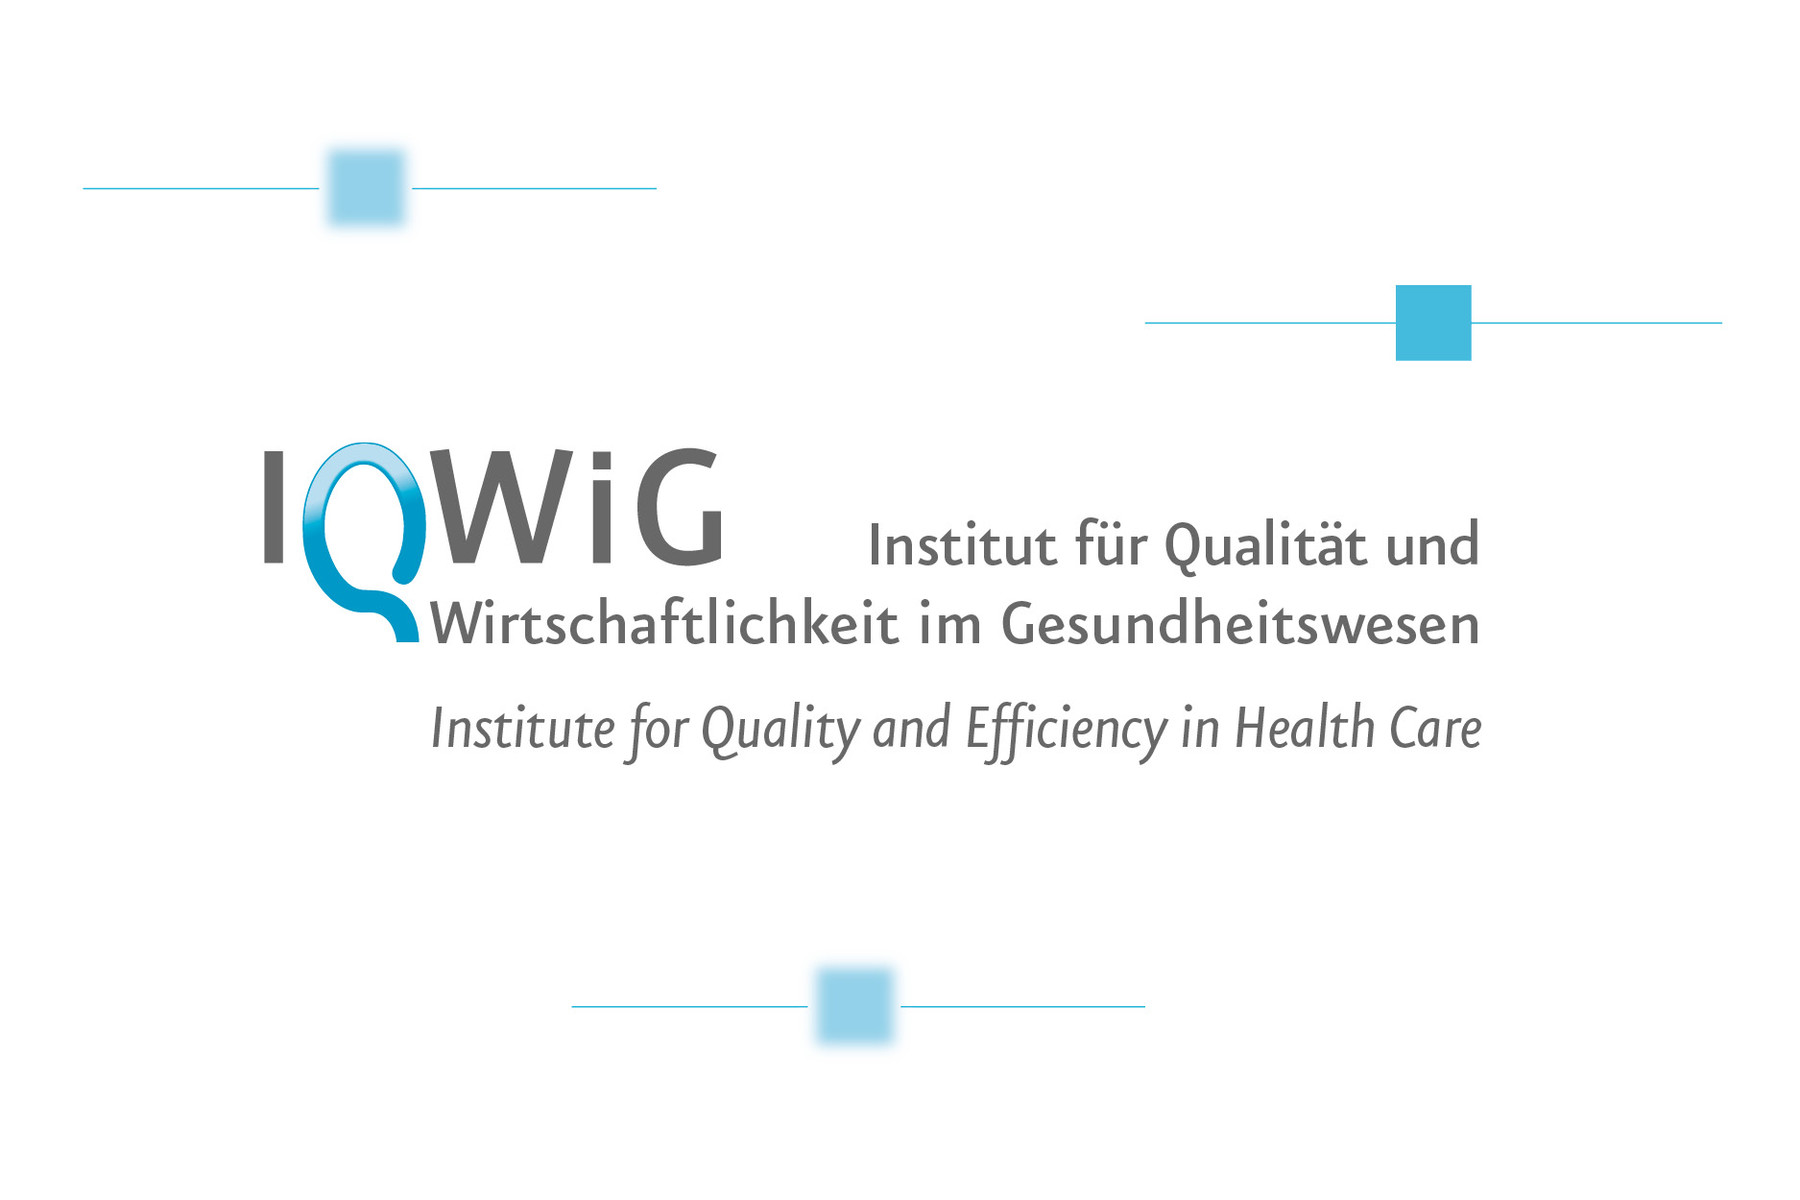 IQWIG — Institut für Qualität und Wirtschaftlichkeit im Gesundheitswesen